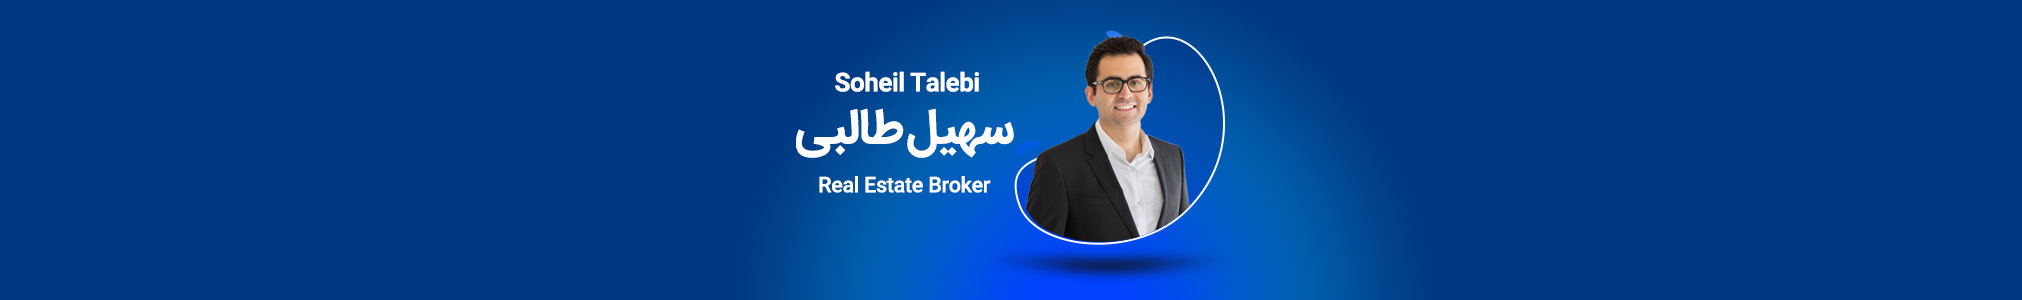 Soheil Talebi